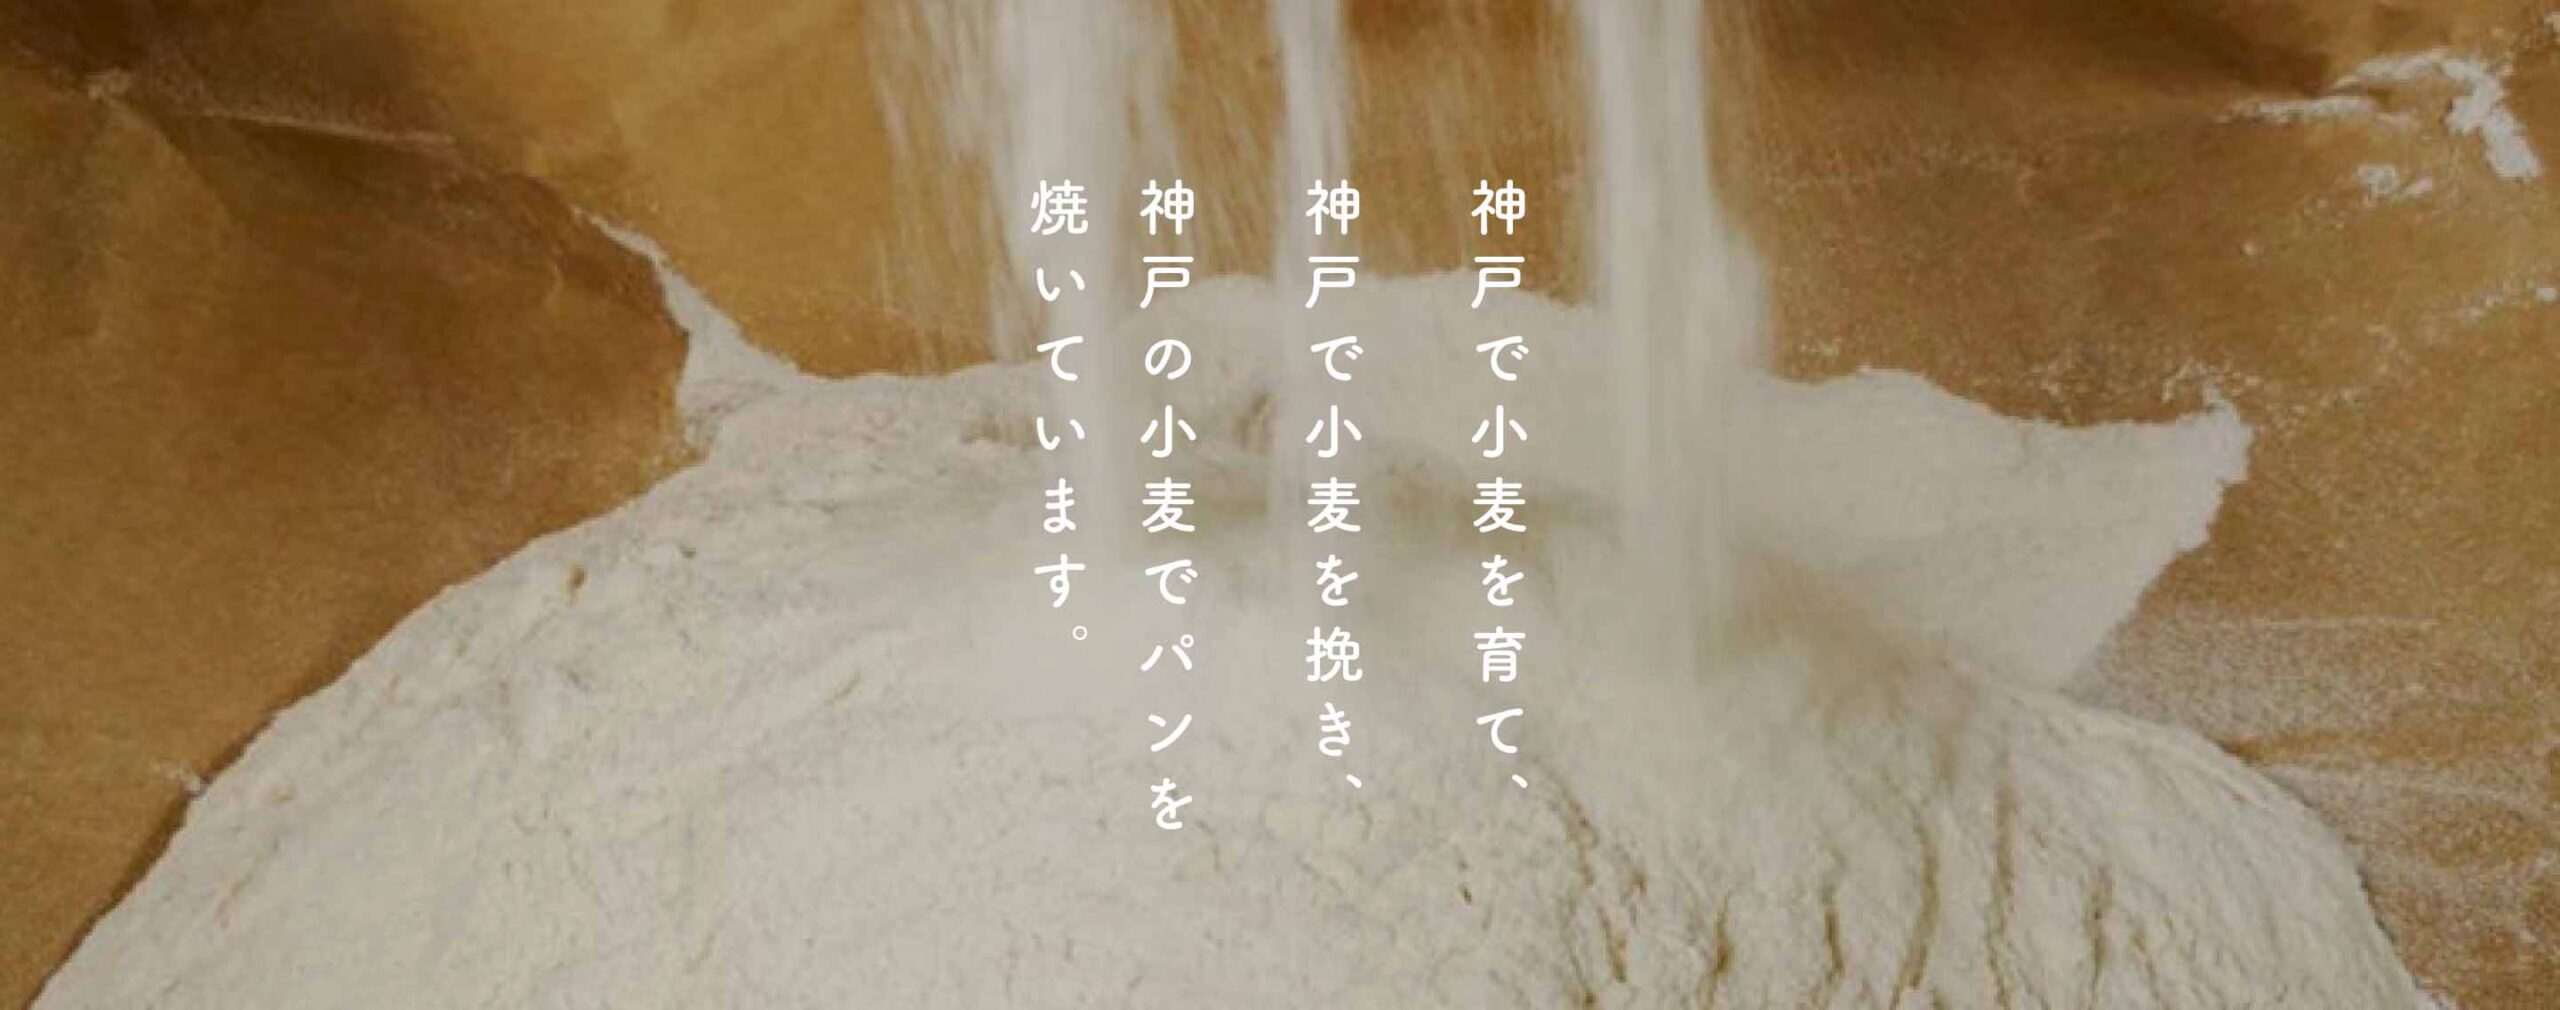 神戸で小麦を育て、神戸で小麦を挽き、神戸の小麦でパンを焼いています。